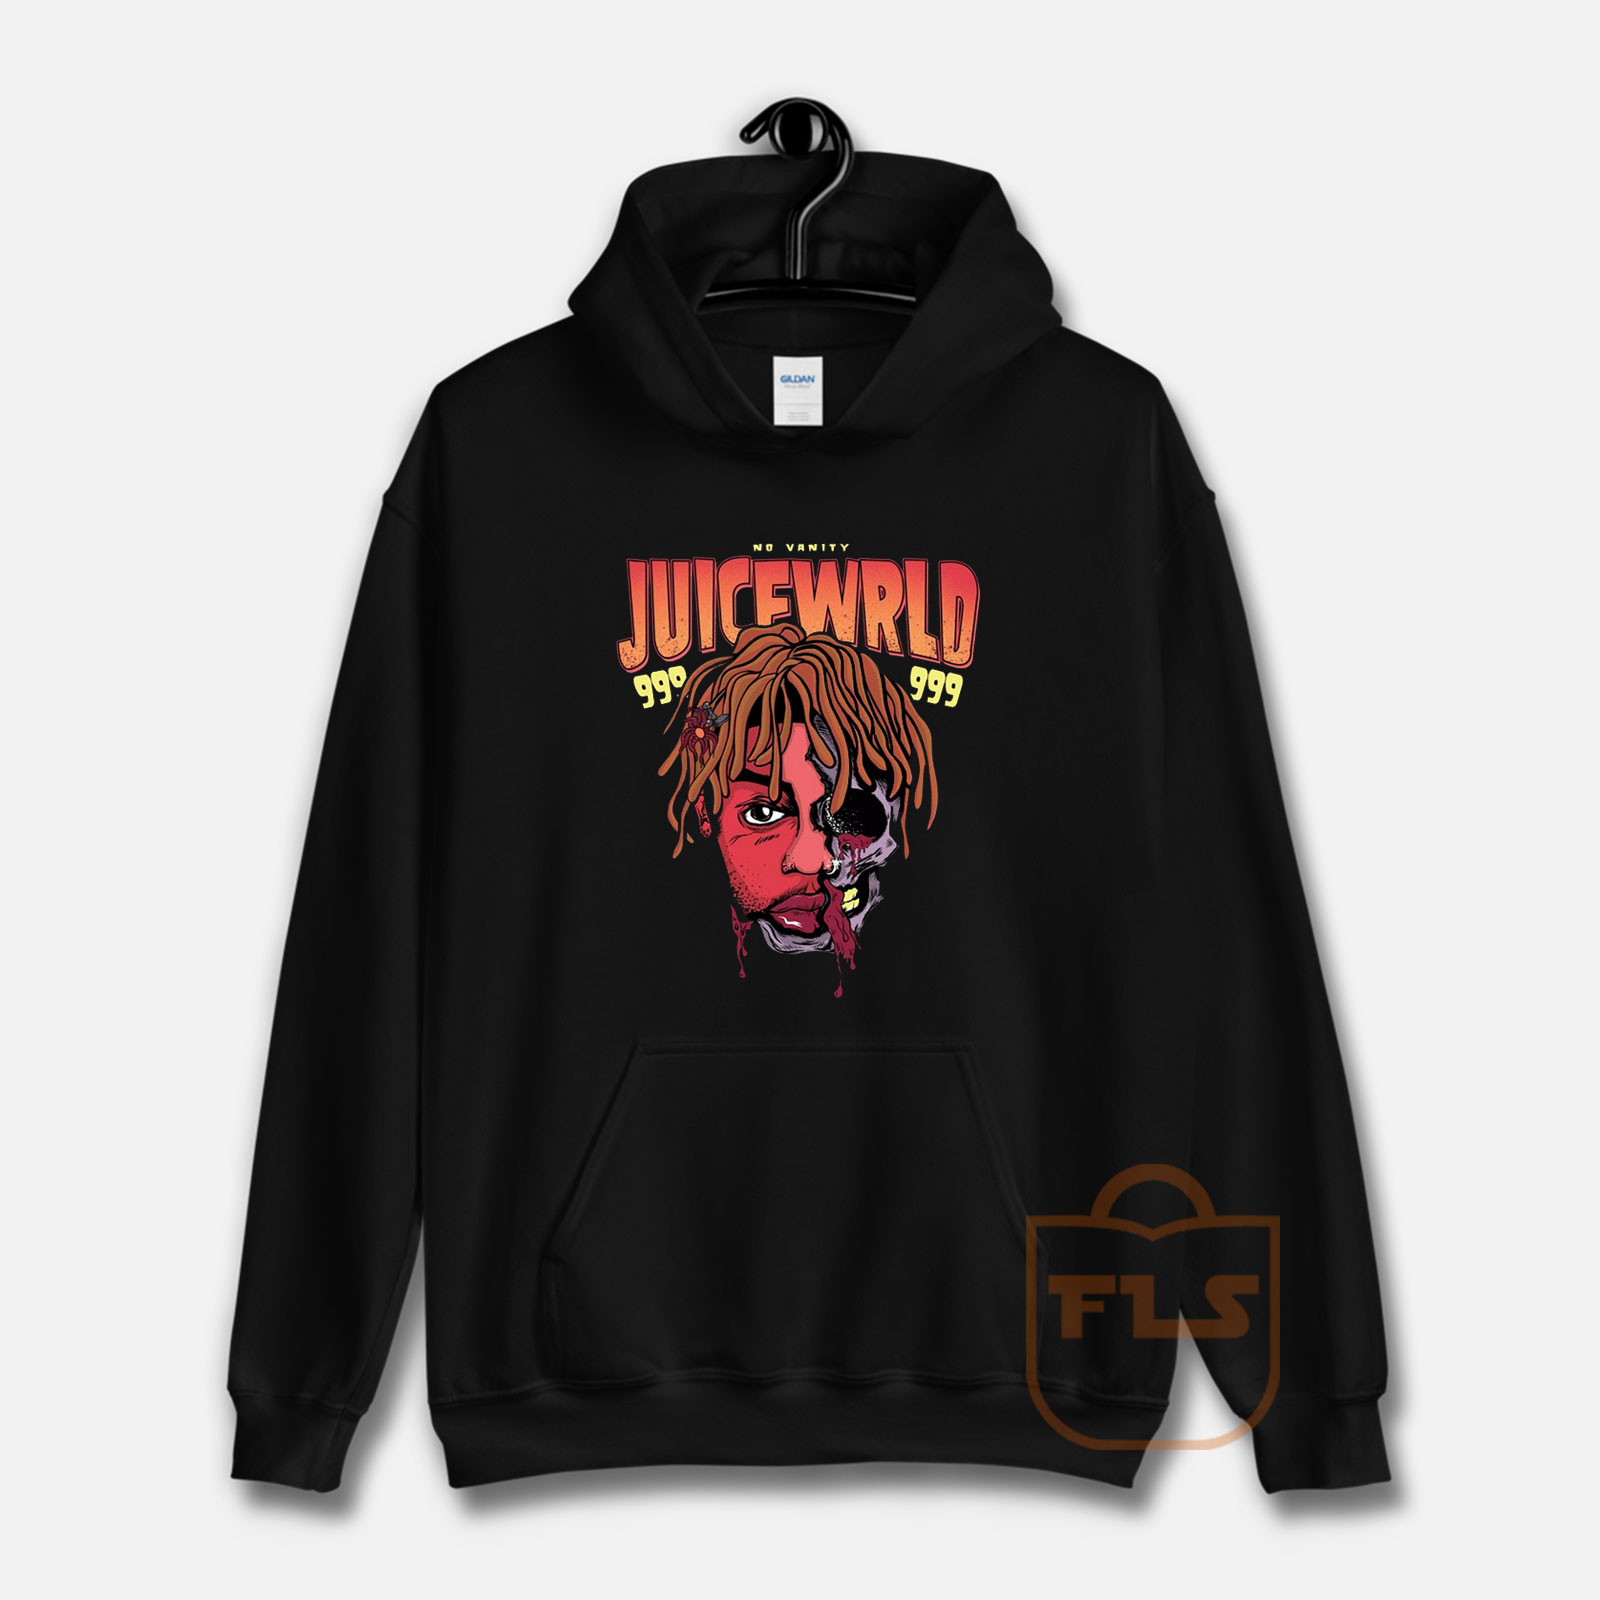 juice wrld hoodie